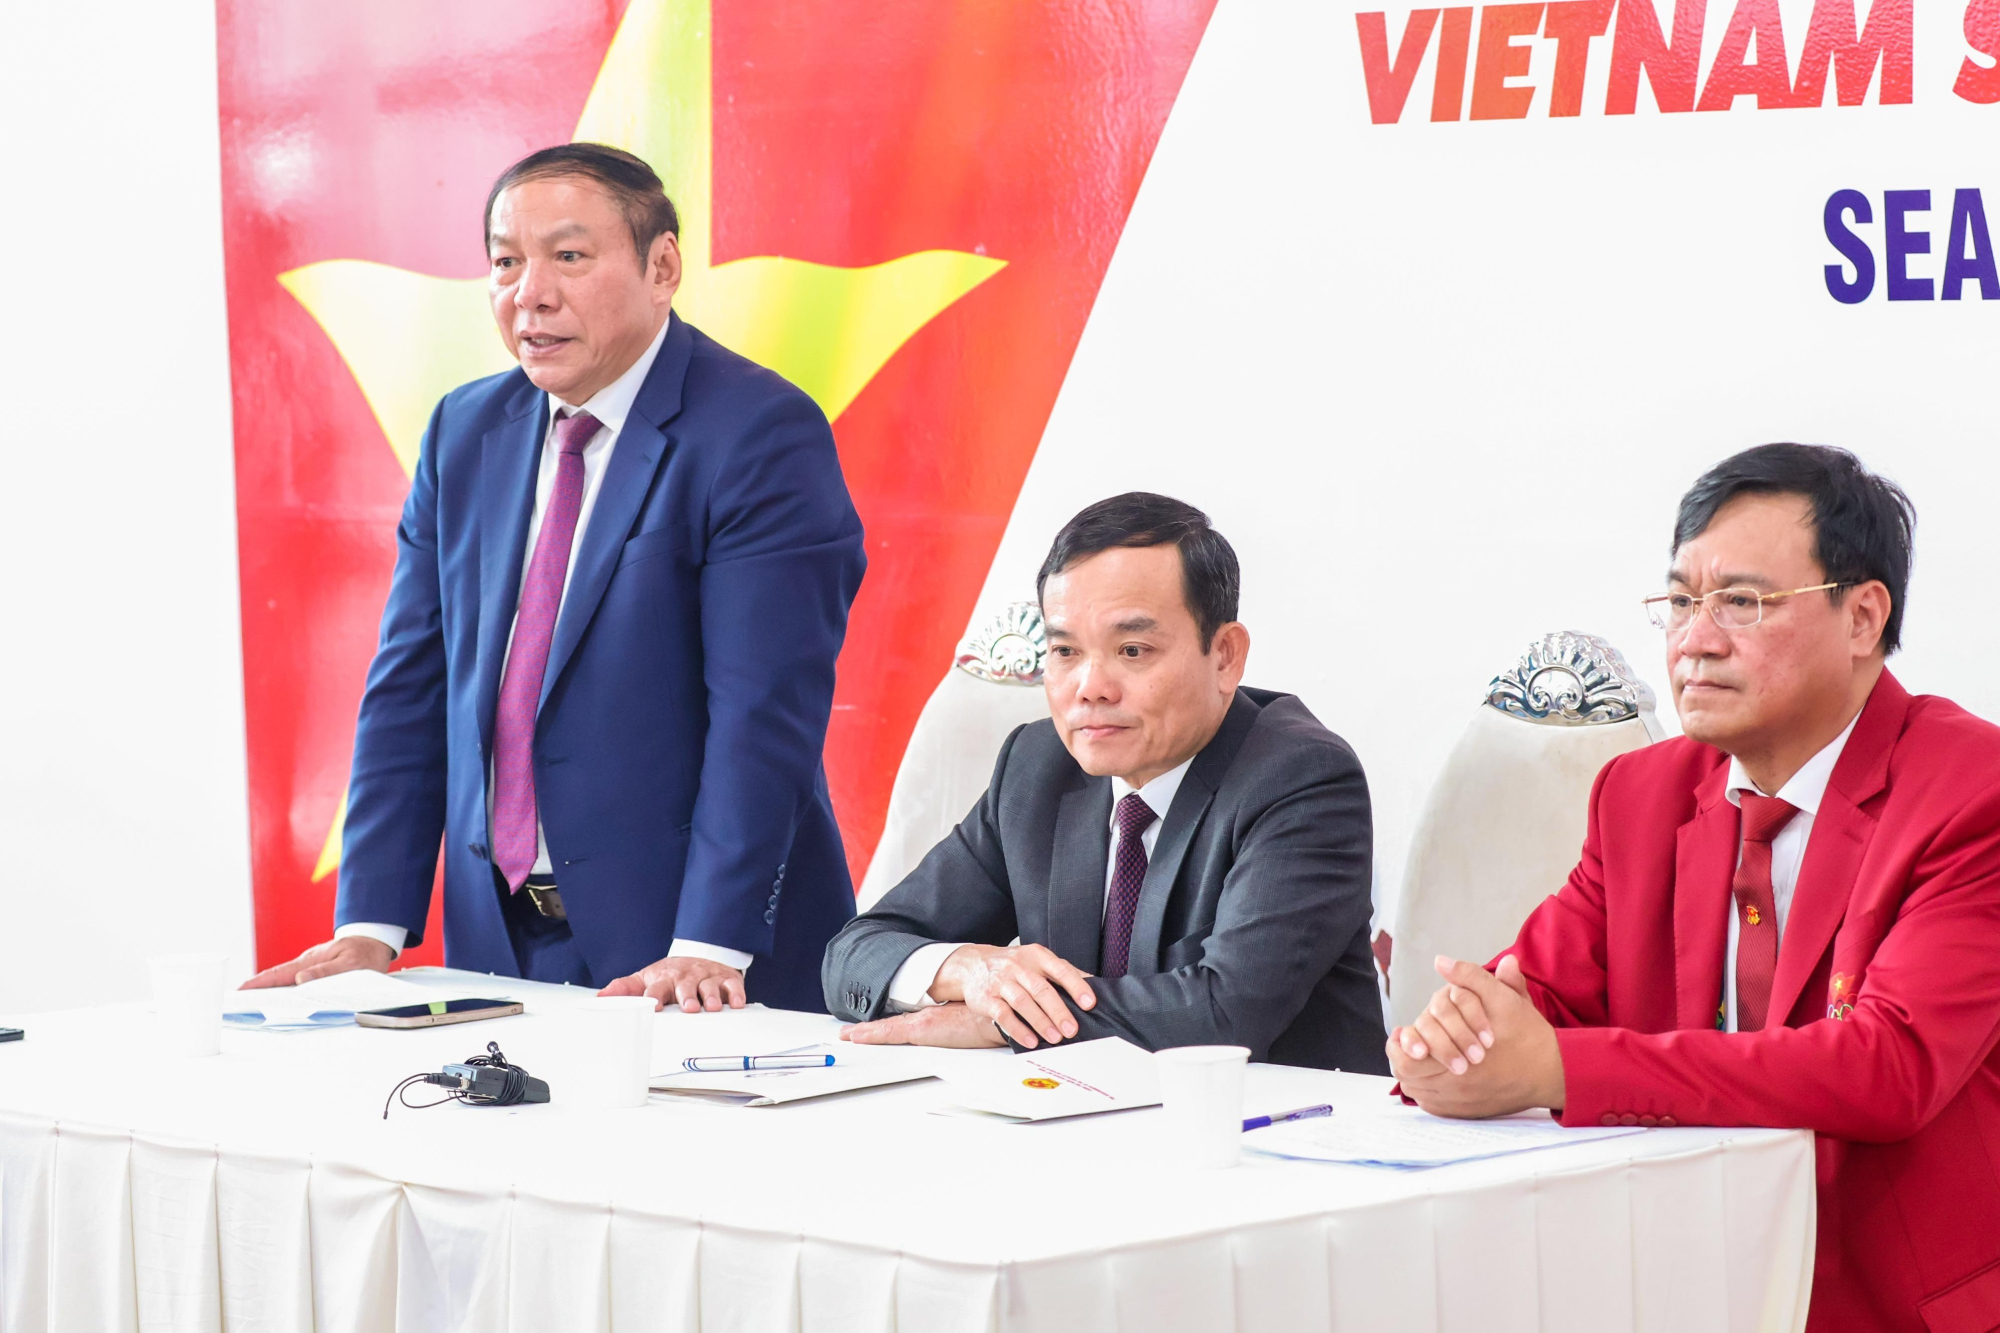 Bộ trưởng Bộ VHTT&DL Nguyễn Văn Hùng đánh giá cao nỗ lực của các tuyển thủ Việt Nam. Ảnh: webthethao